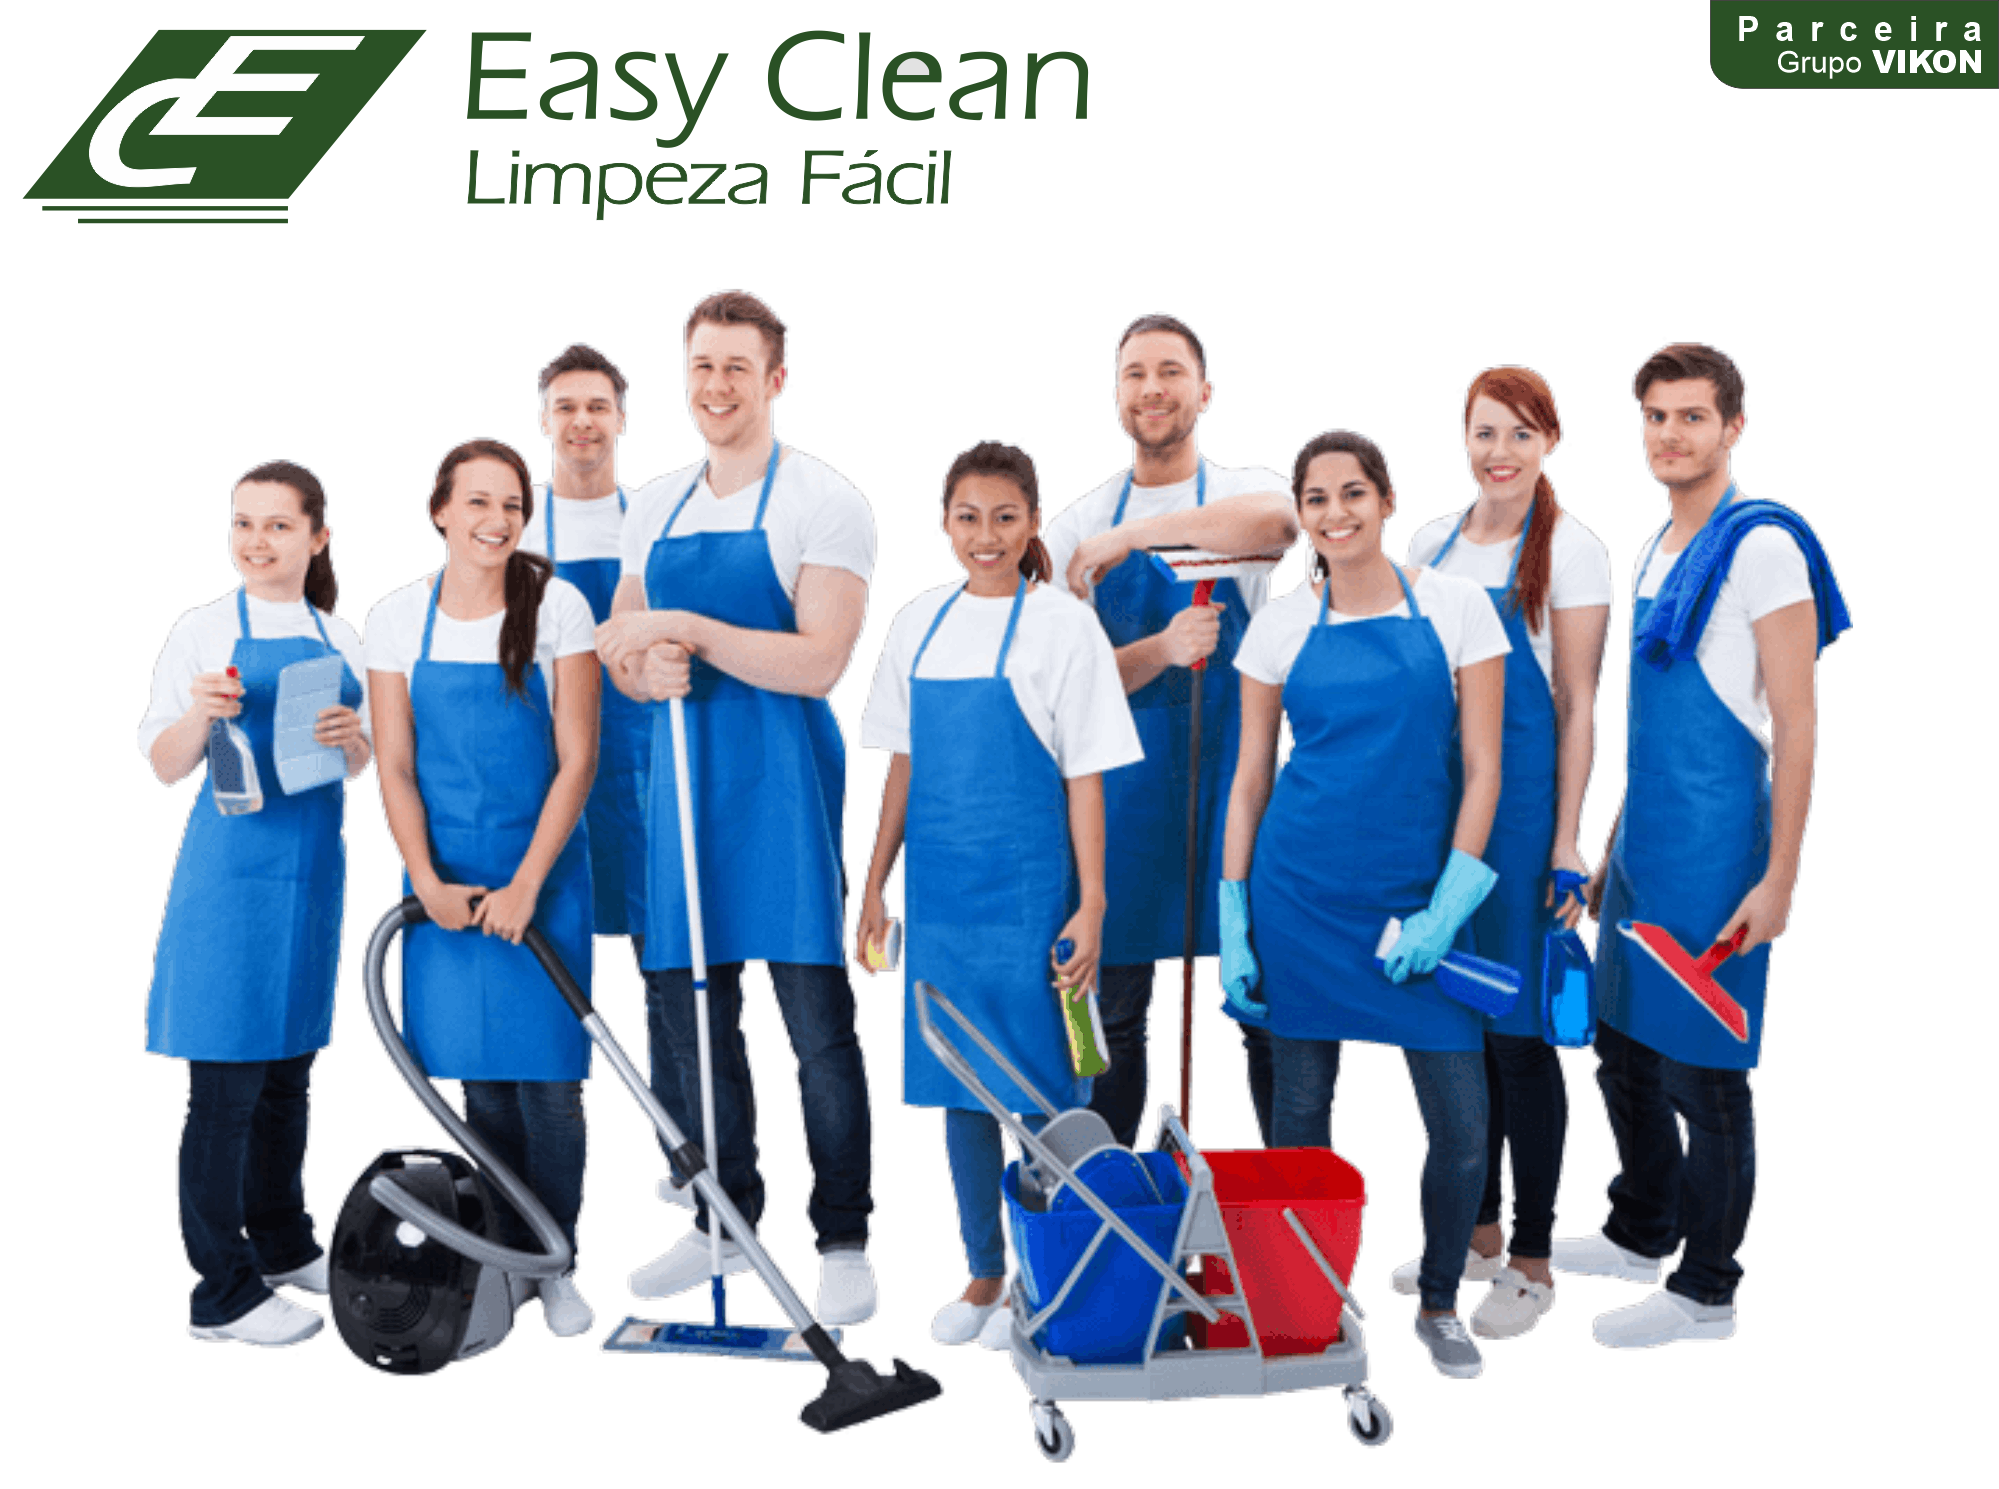 VIKON Clube Easy Clean Limpeza Facil Terceirizacao Servicos Gerais 07